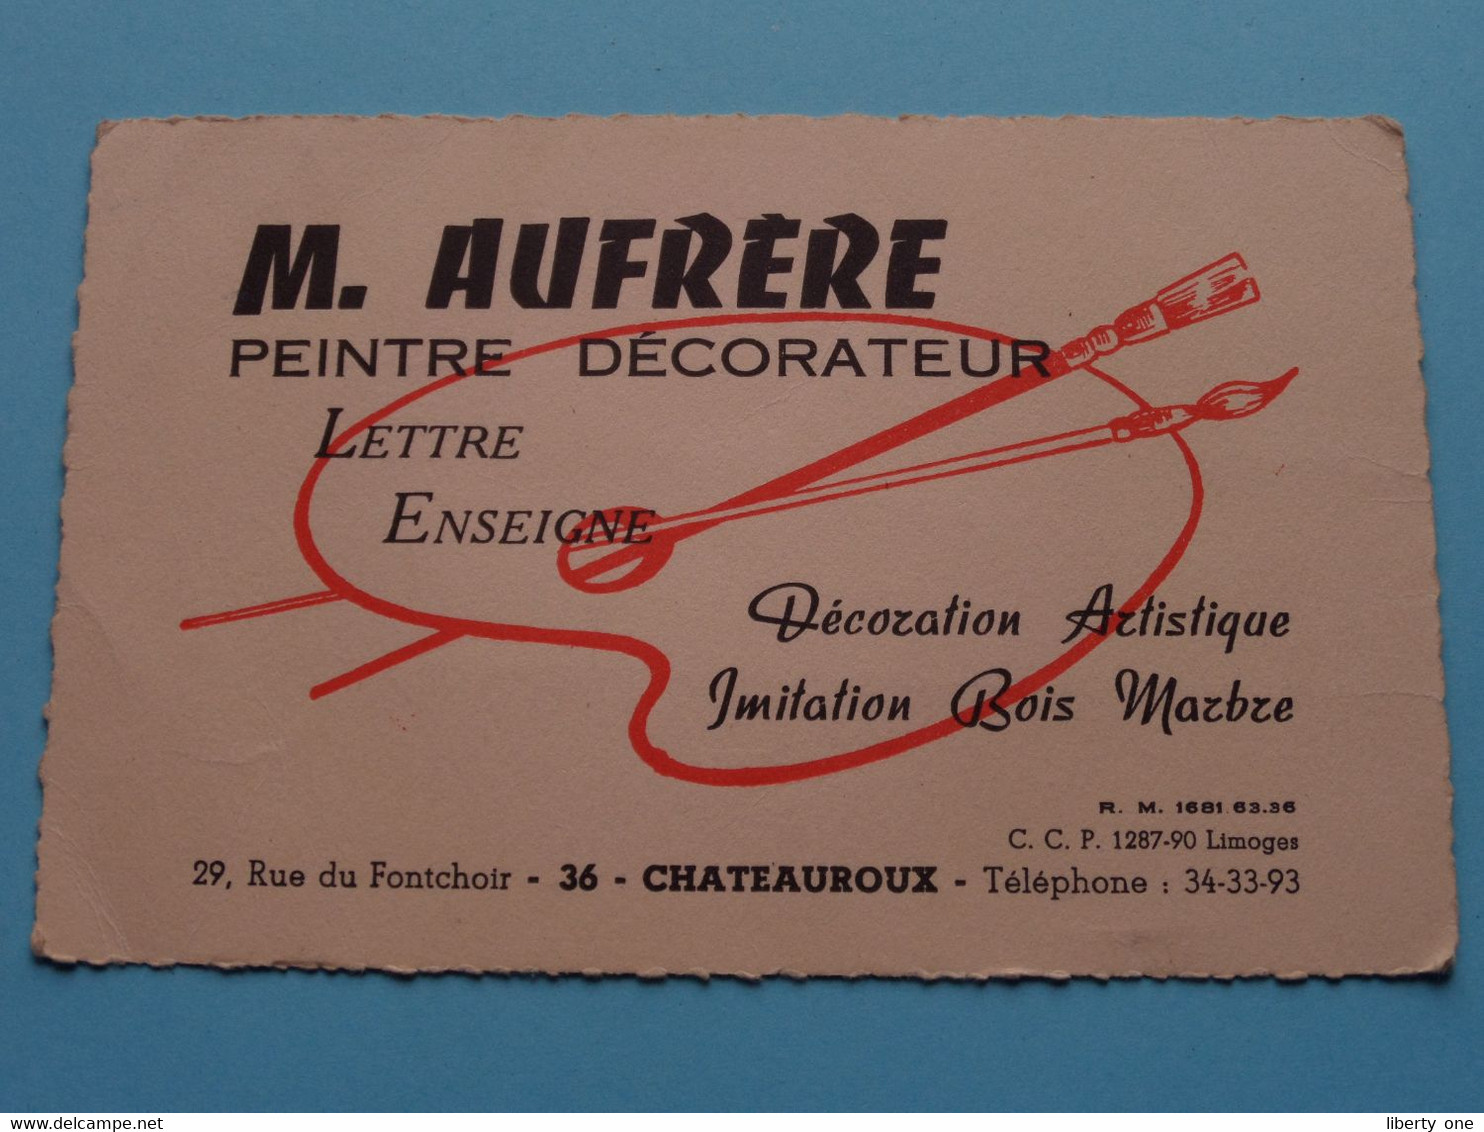 Peintre Décorateur M. AUFRERE > Chateauroux ( Voir / Zie Scan ) ! - Cartes De Visite